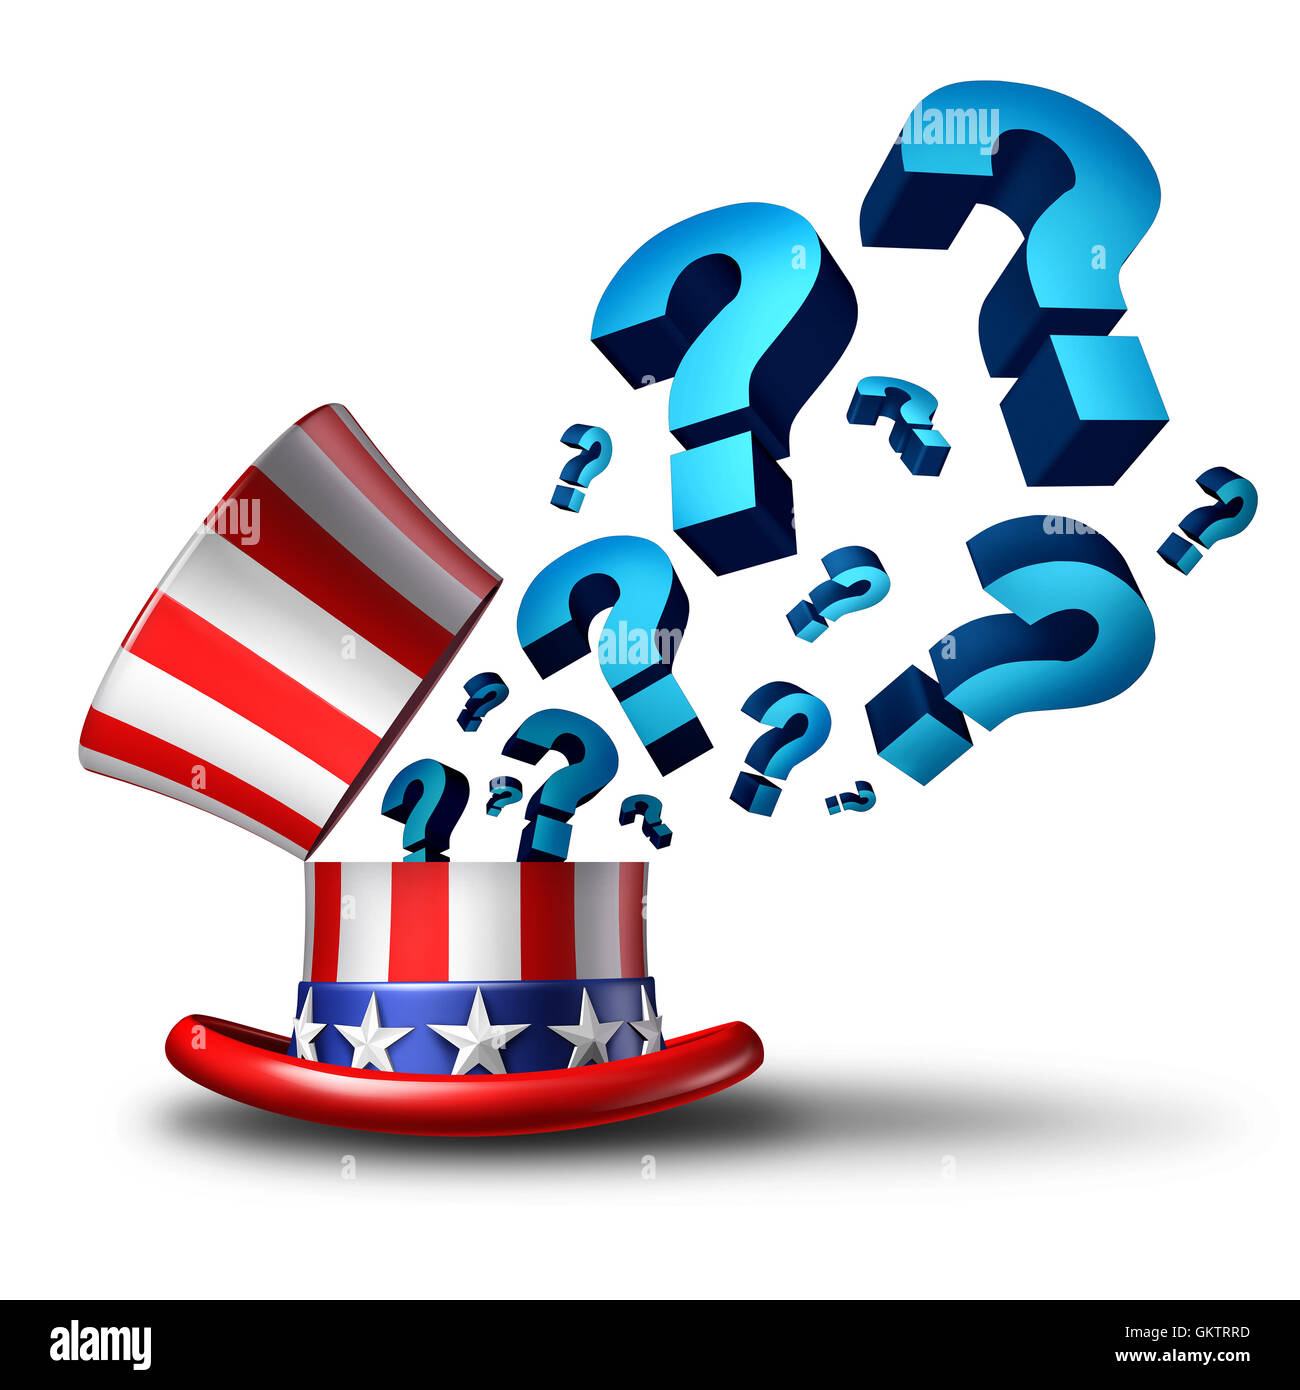 USA Wahlen Frage und amerikanische Regierung Fragen als ein 3D Illustration, Politik und Gesetzgebung Verwirrung darstellt oder einen weißen Hintergrund Entscheidung Wahl abstimmen. Stockfoto